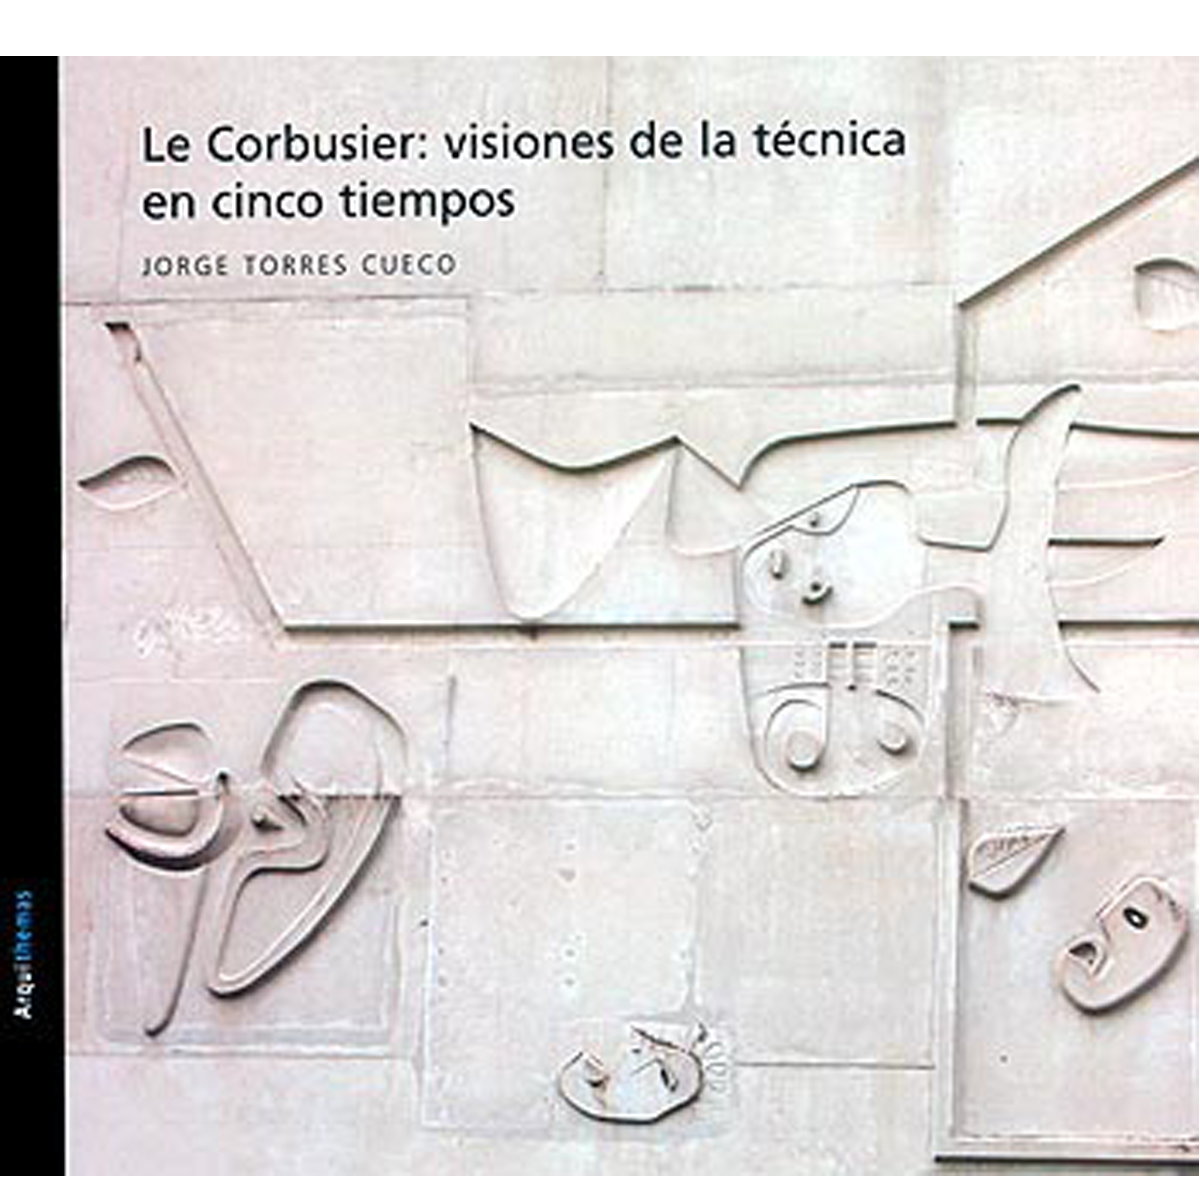 Le Corbusier: visiones de la técnica en cinco tiempos